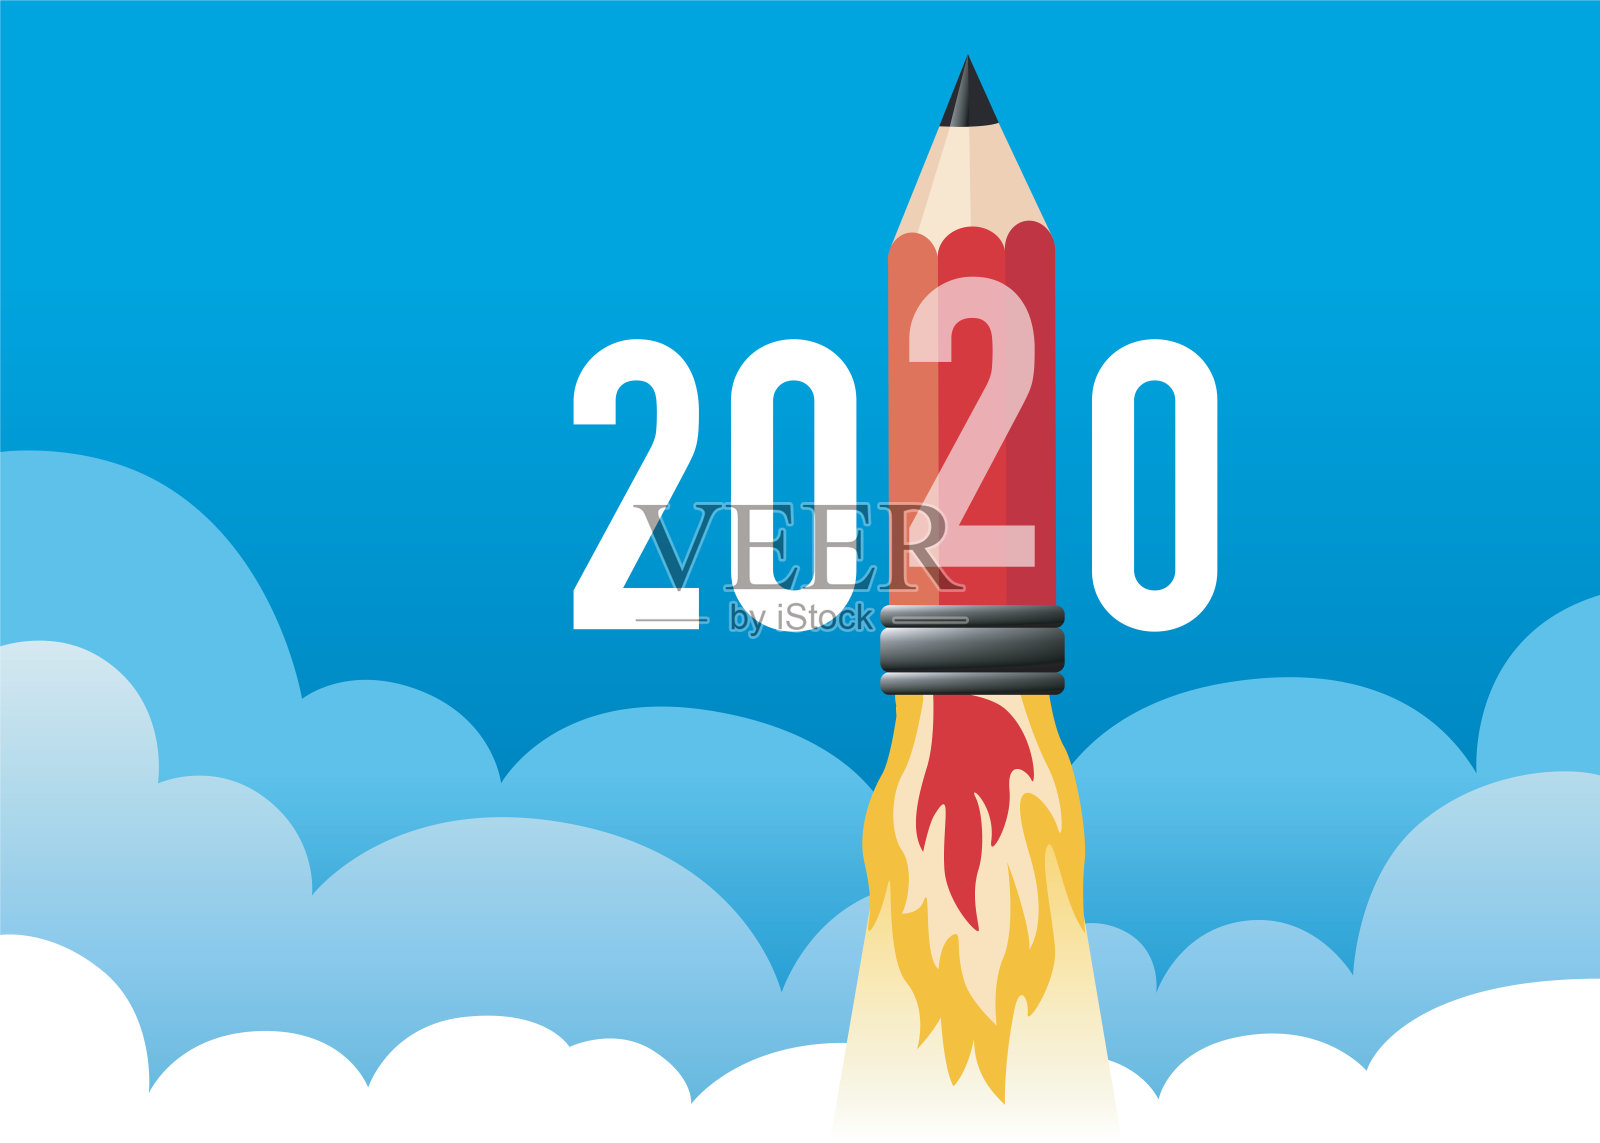 一个2020年贺卡的概念，显示一支火箭形状的铅笔。插画图片素材